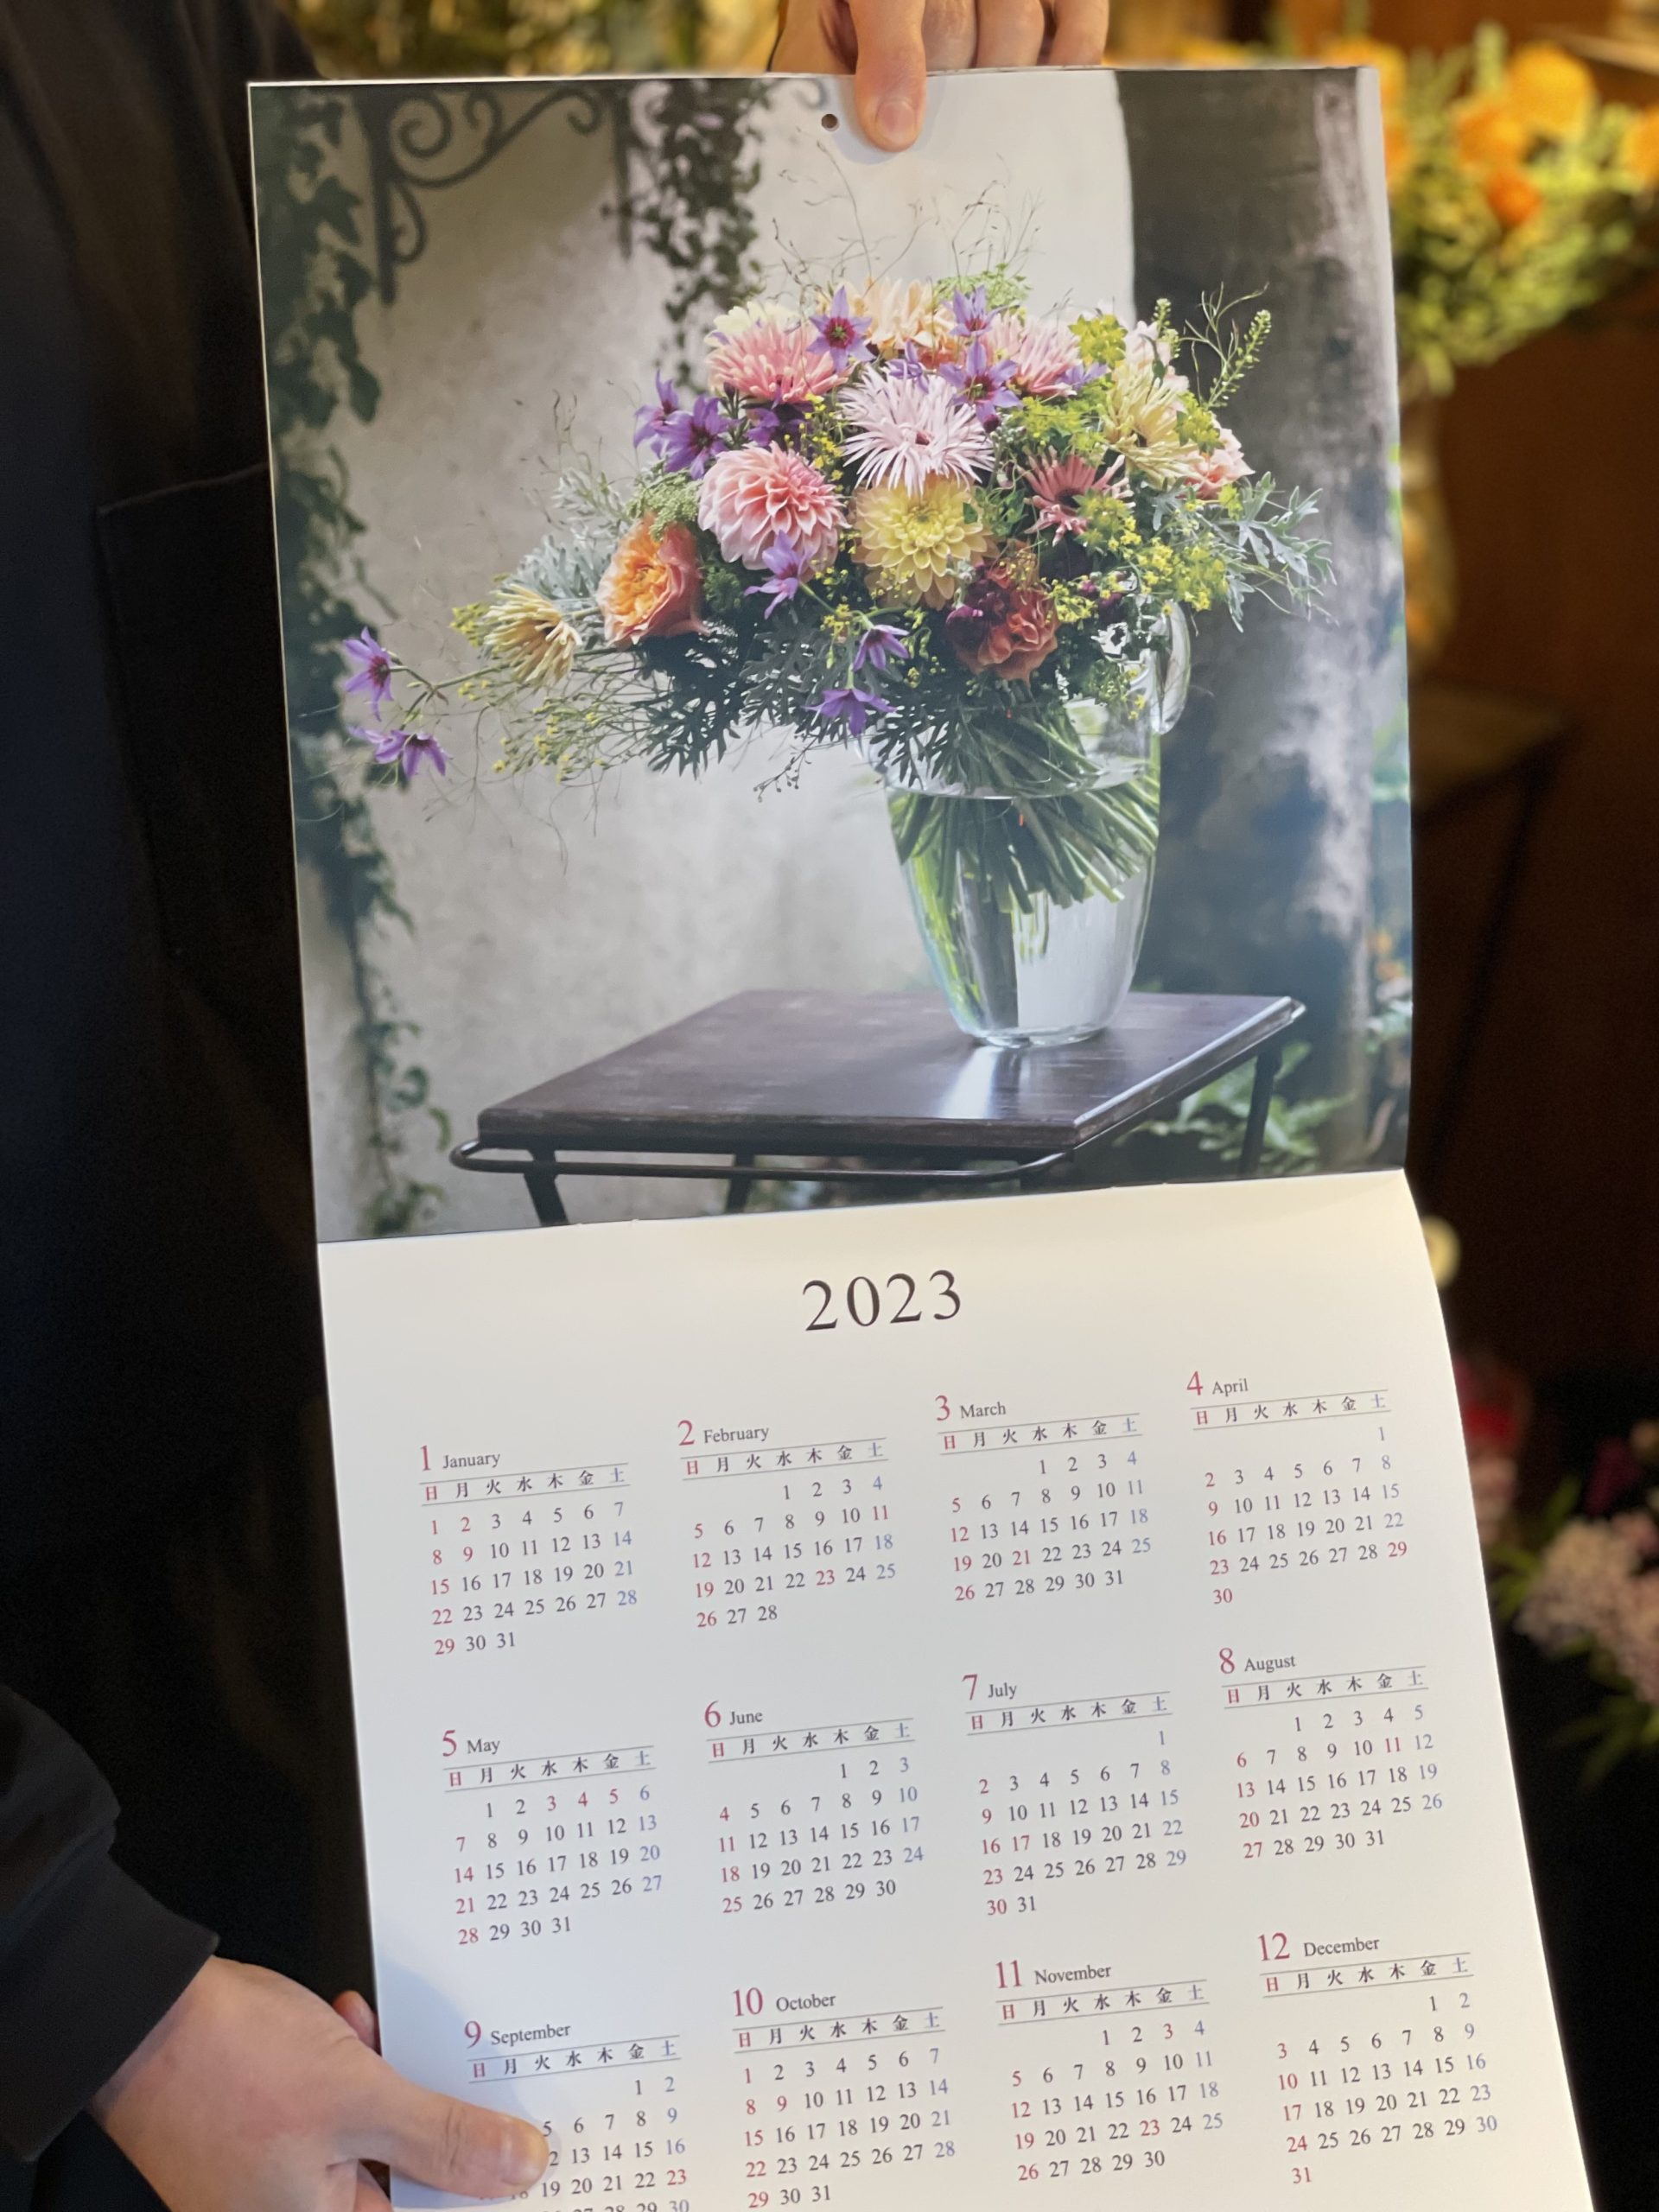 花雑誌「フローリスト」 特別編集フラワーカレンダー2022年にフラコッタデコが 掲載されました。